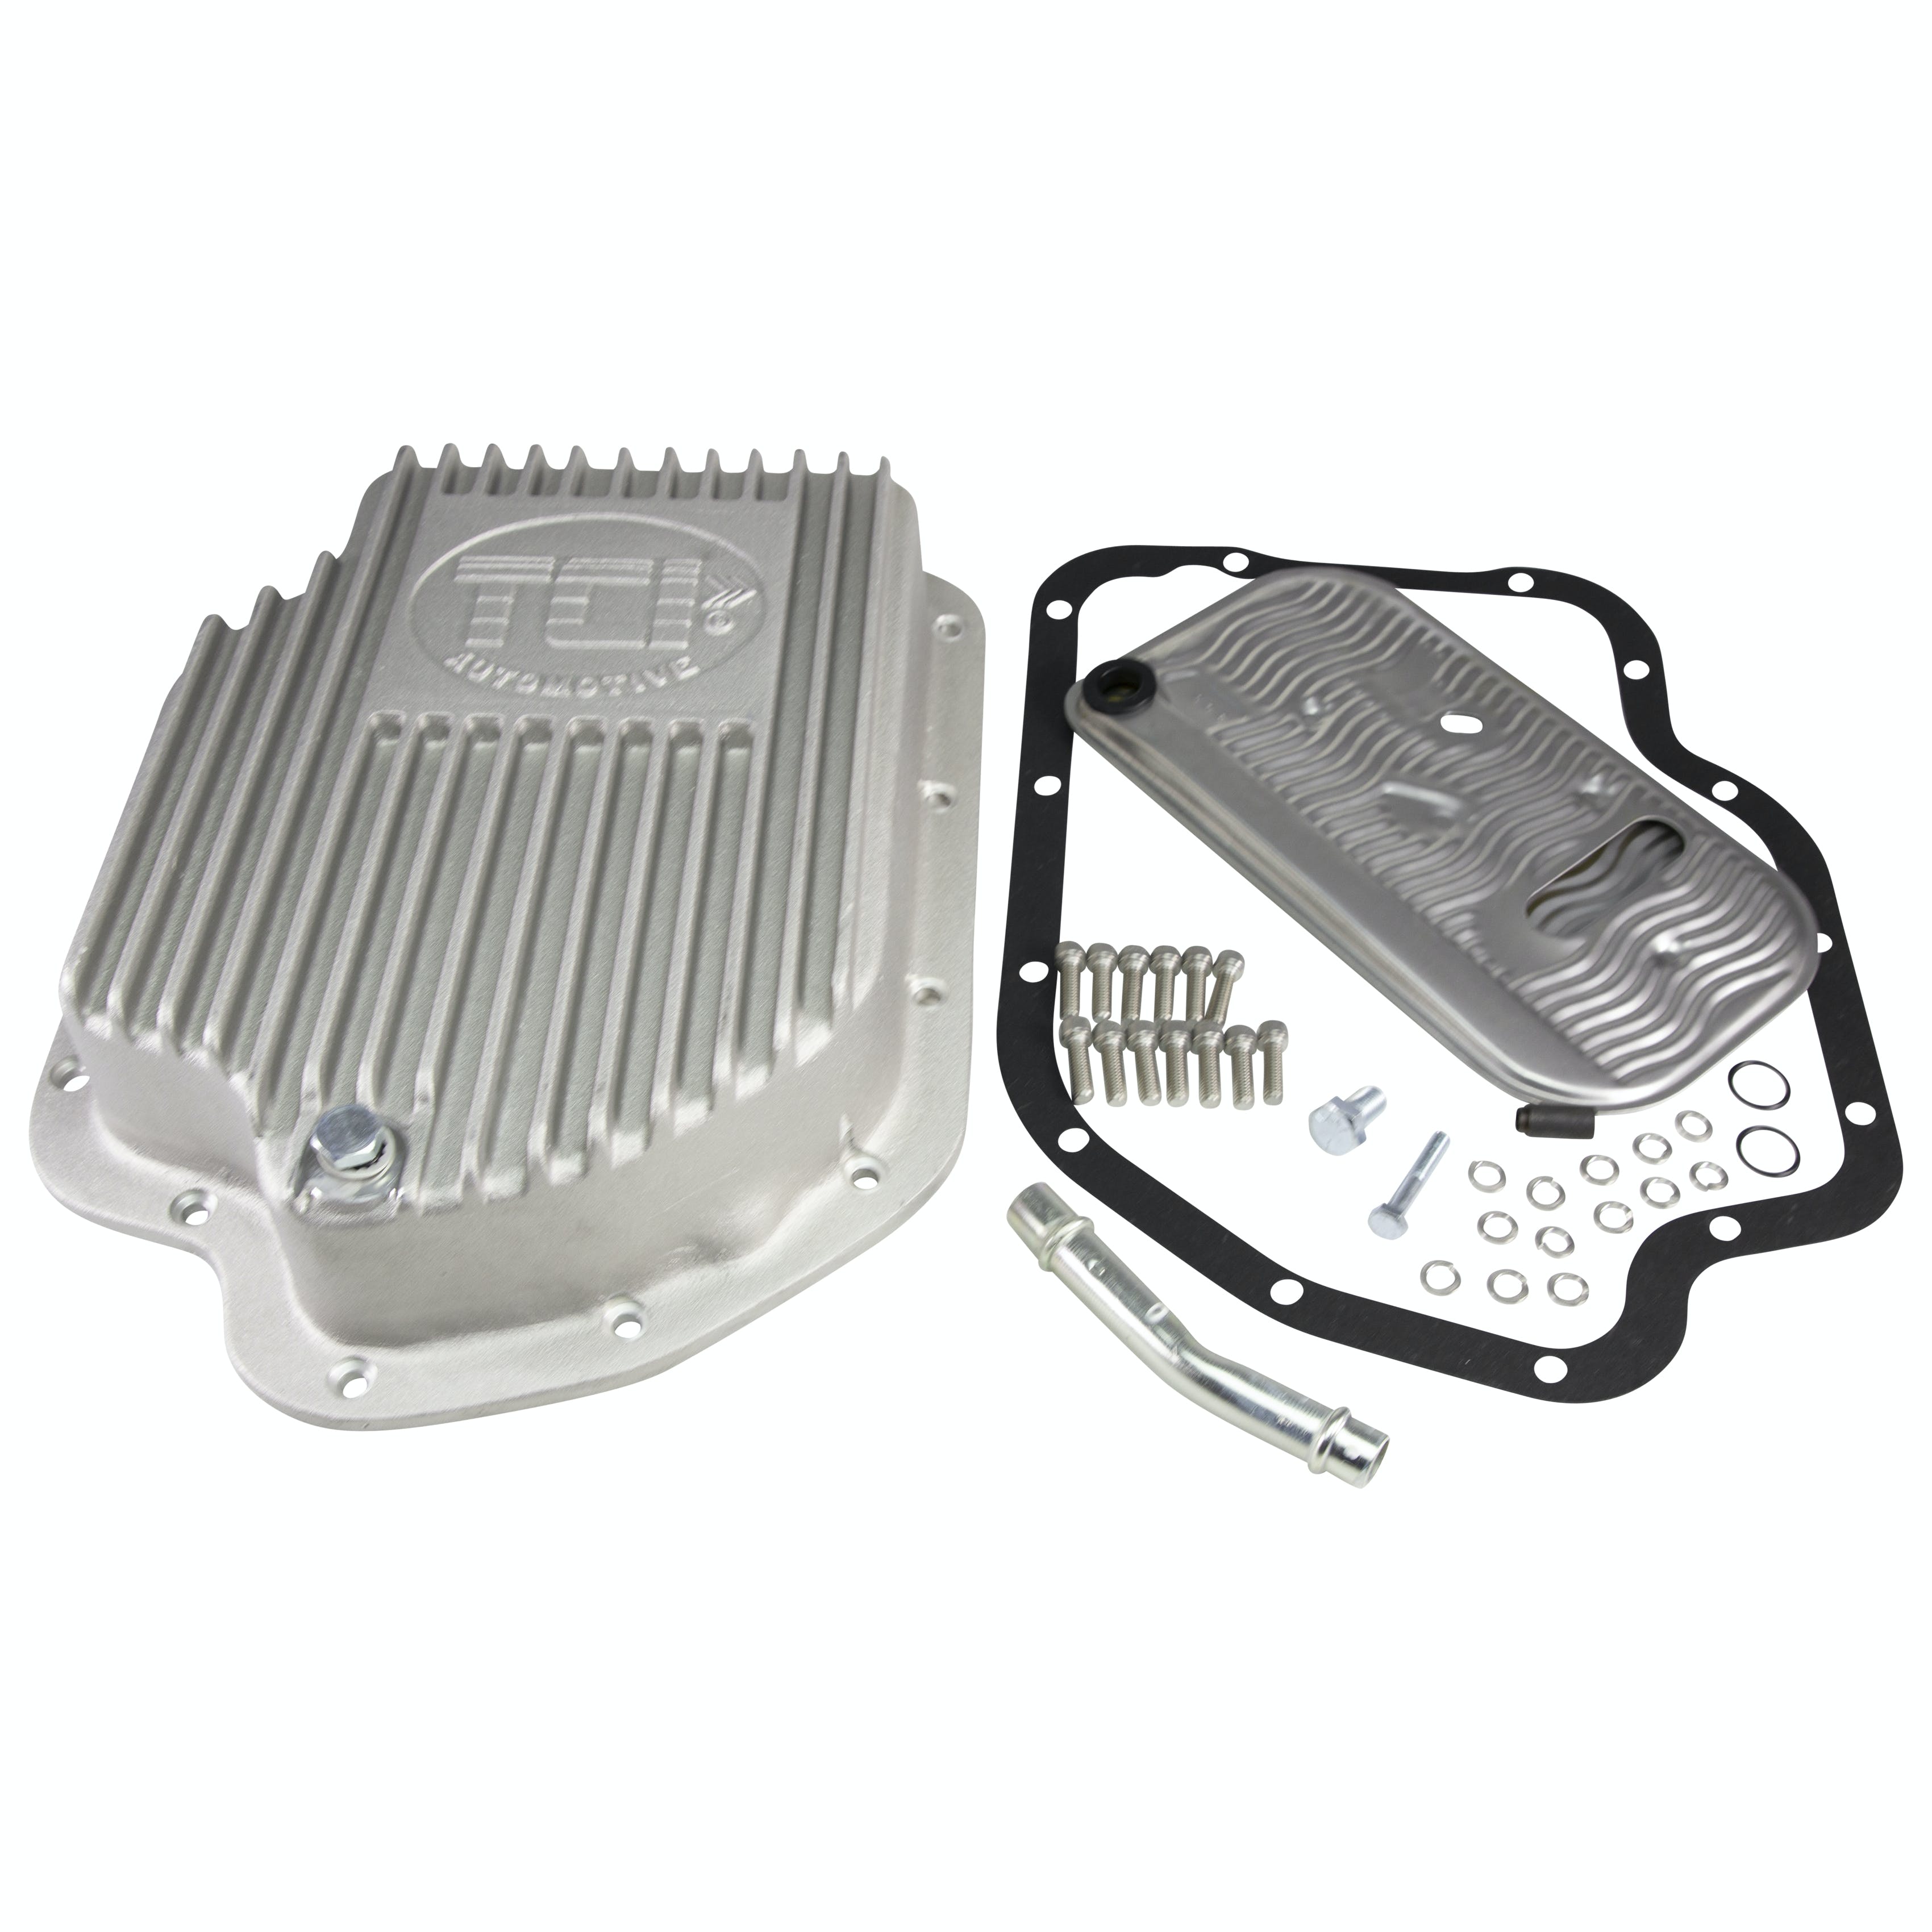 TCI Automotive 228000 GM TH400 Cast Aluminum Deep Pan (2 Extra Quarts)